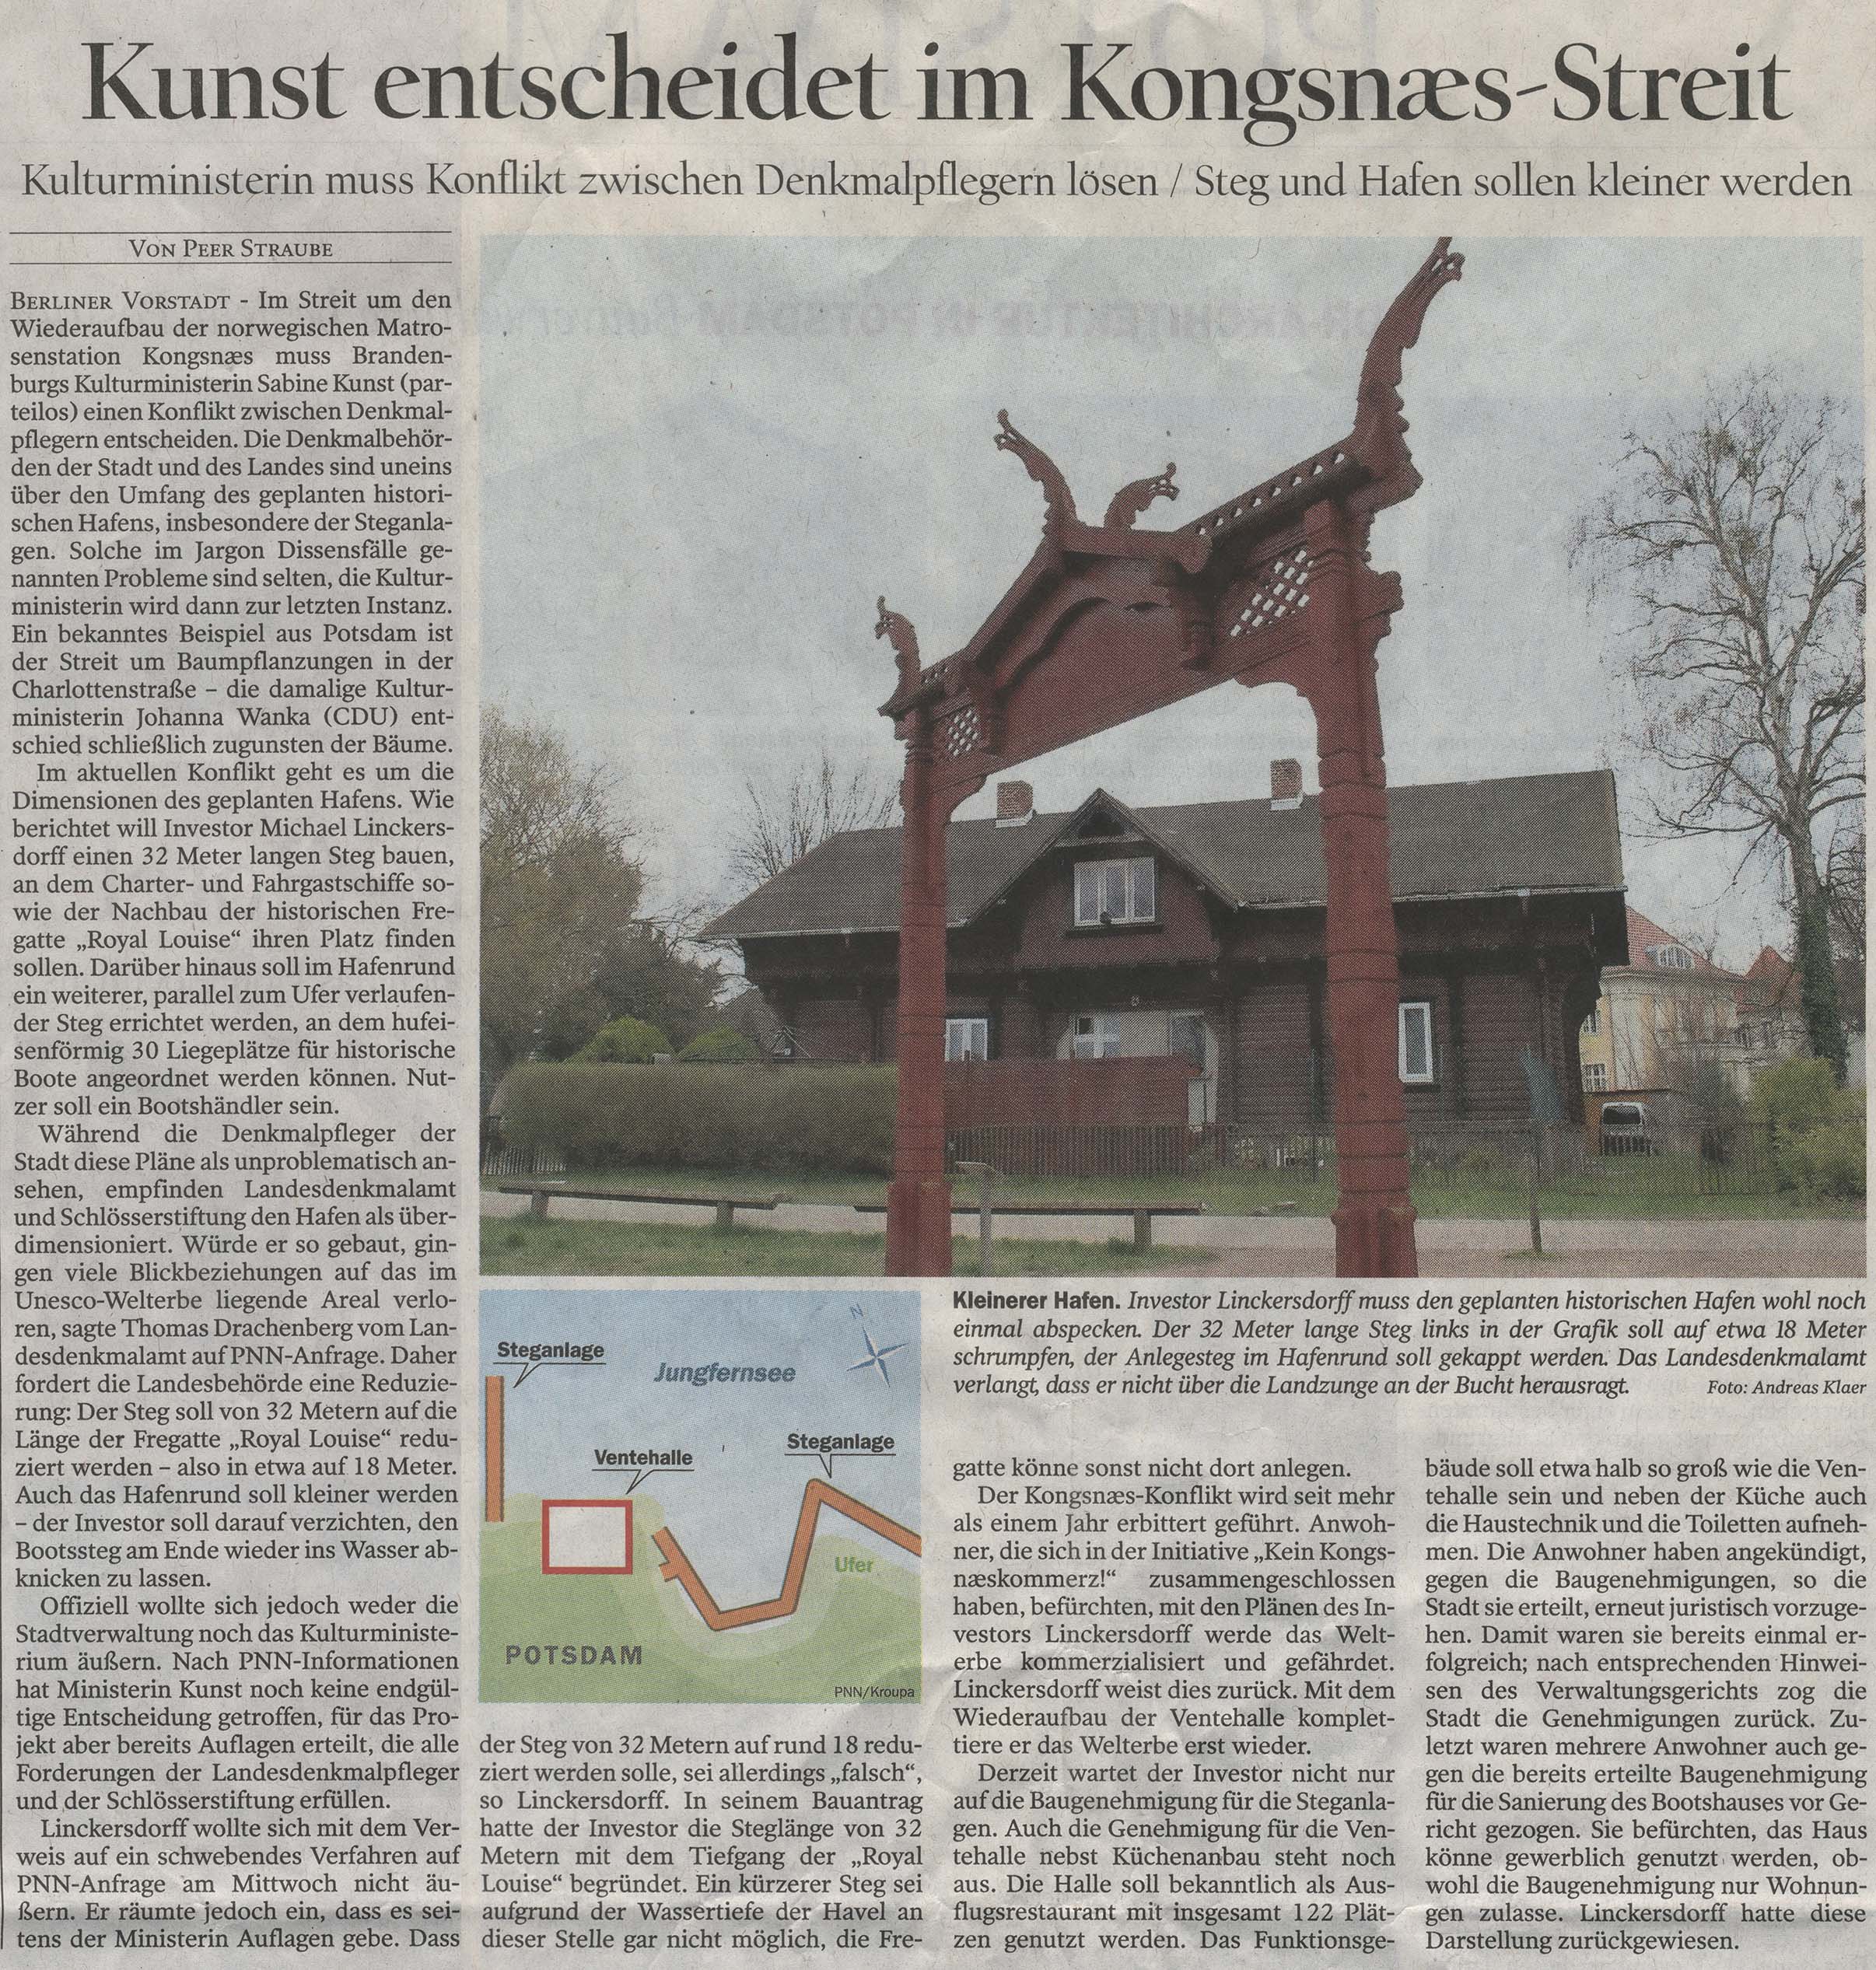 Potsdamer Neueste Nachrichten - 29.03.2012